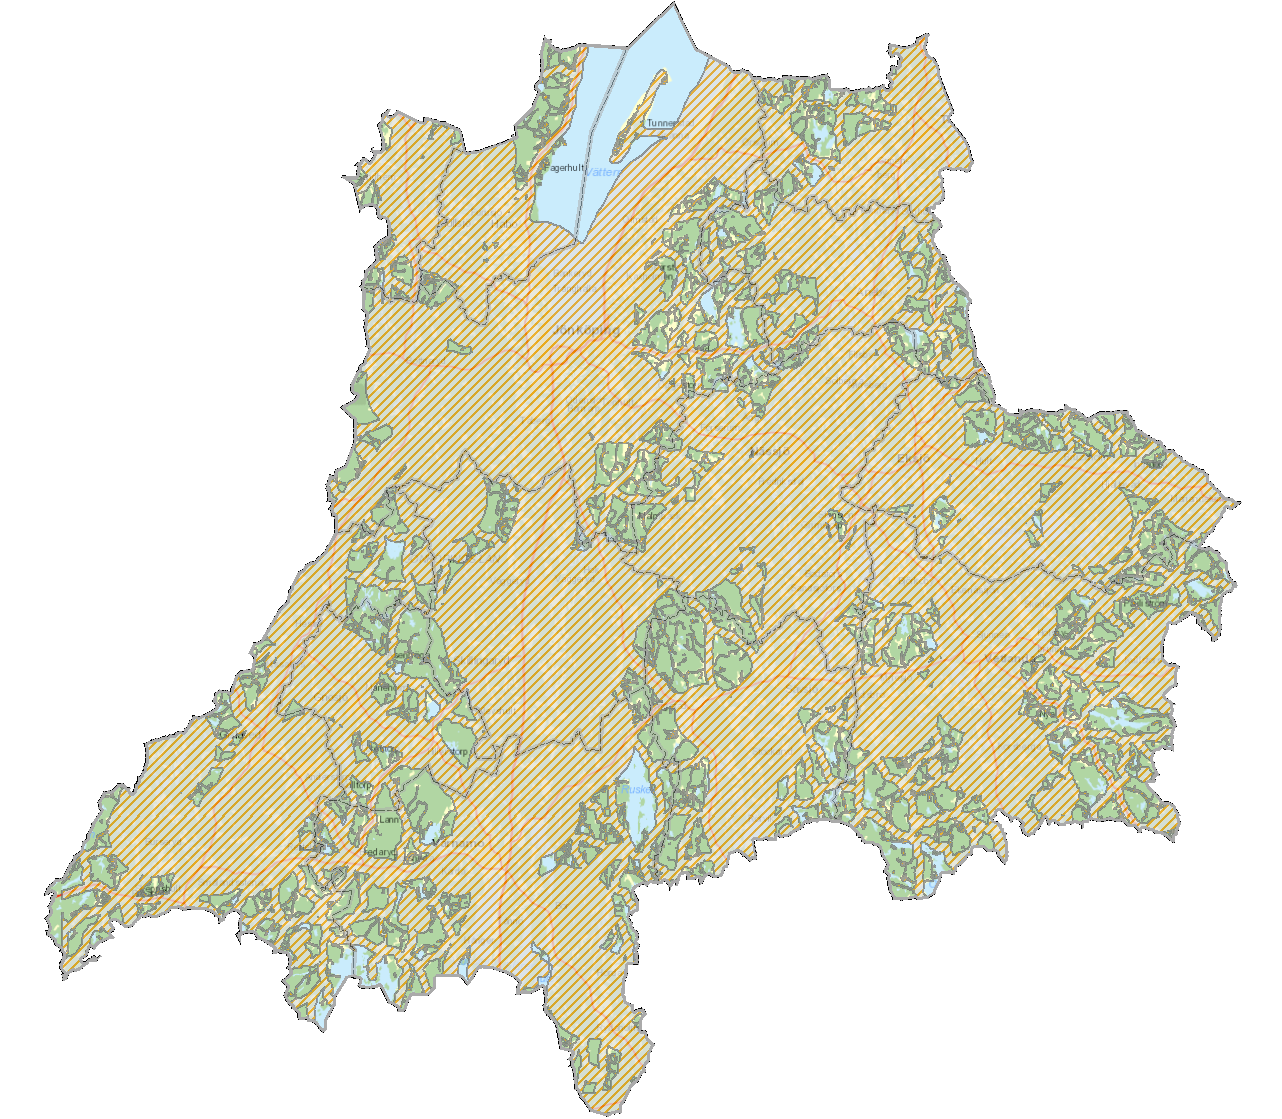 Ostörda områden Figur 40. Ostörda områden ur ett bullerperspektiv. Grön färg indikerar att området är ostört. Kartan visar på att länet är väldigt fragmenterat.